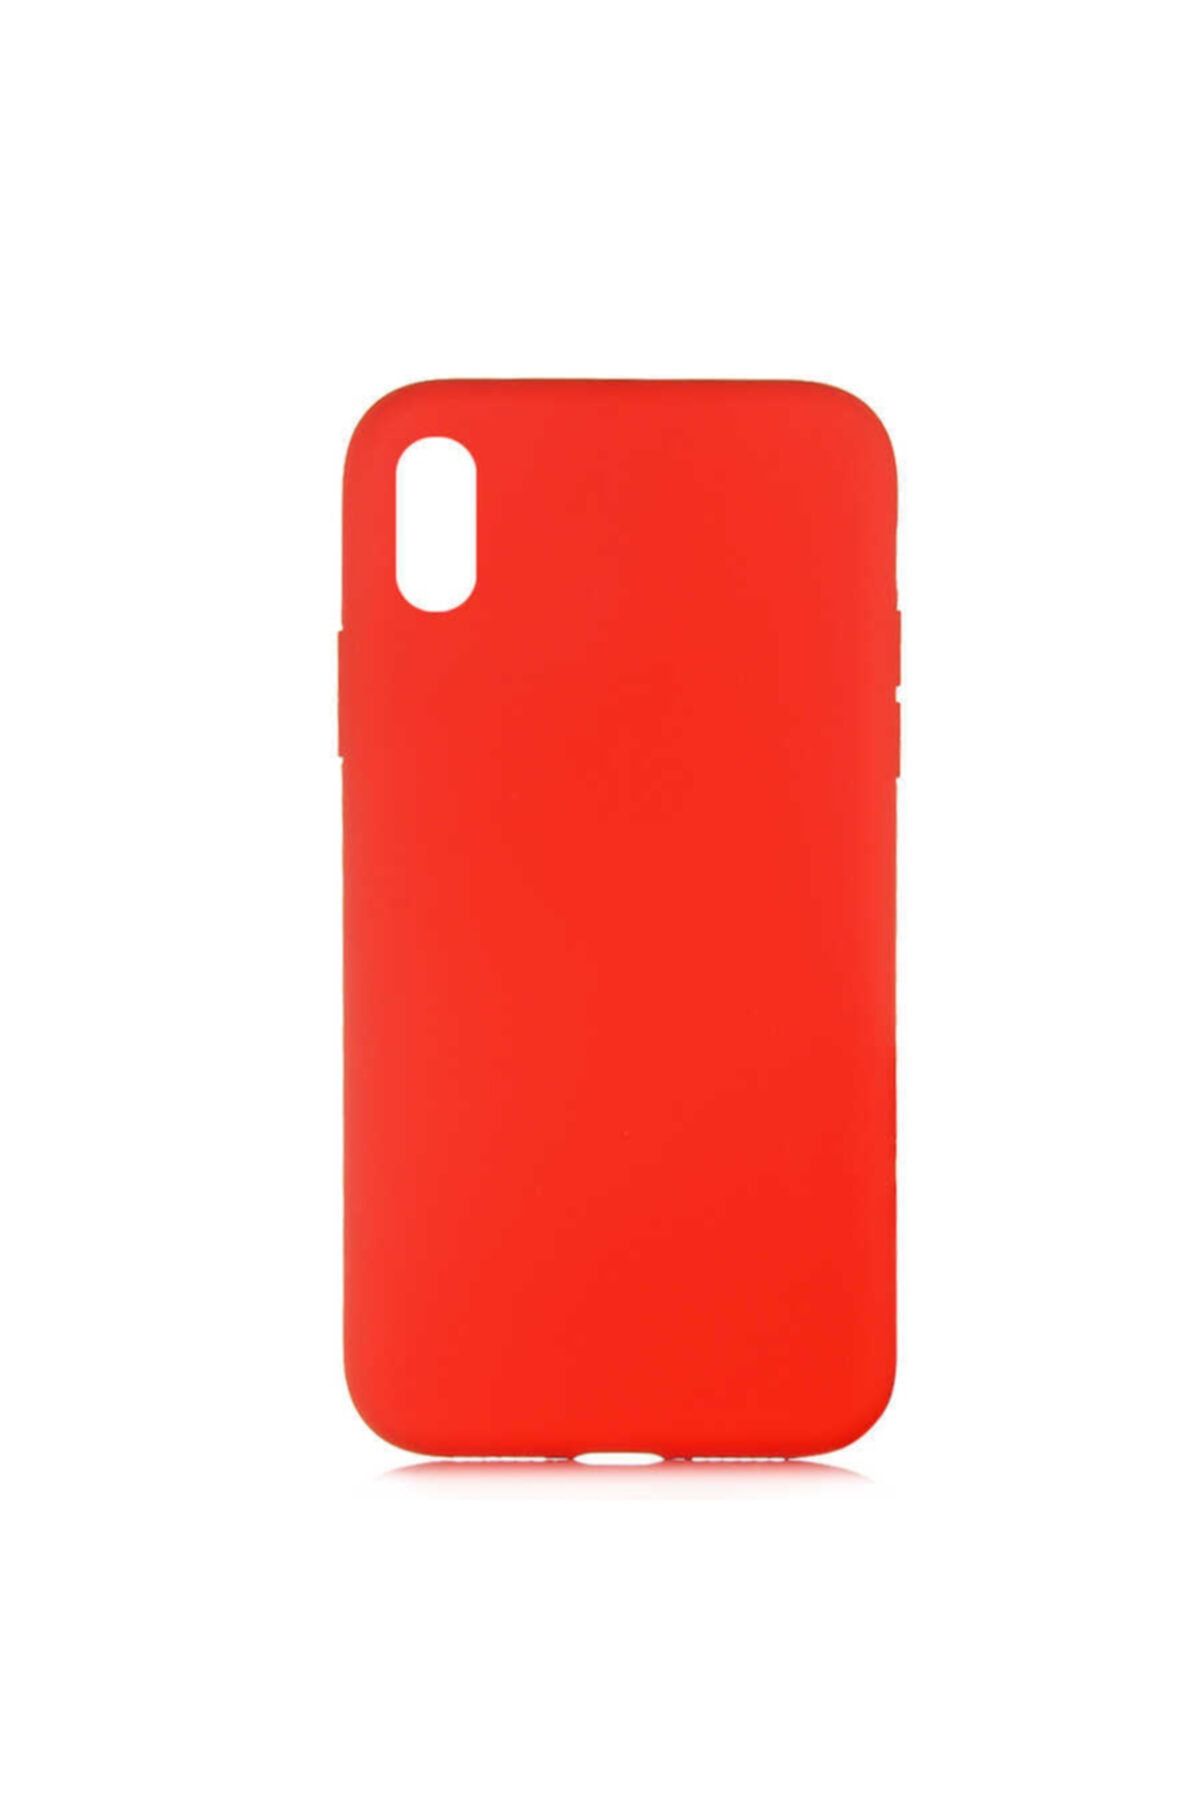 MOBAX Apple Iphone Xs 5.8 Kılıf Lsr Lansman Kadife Dokulu Kapak Kırmızı